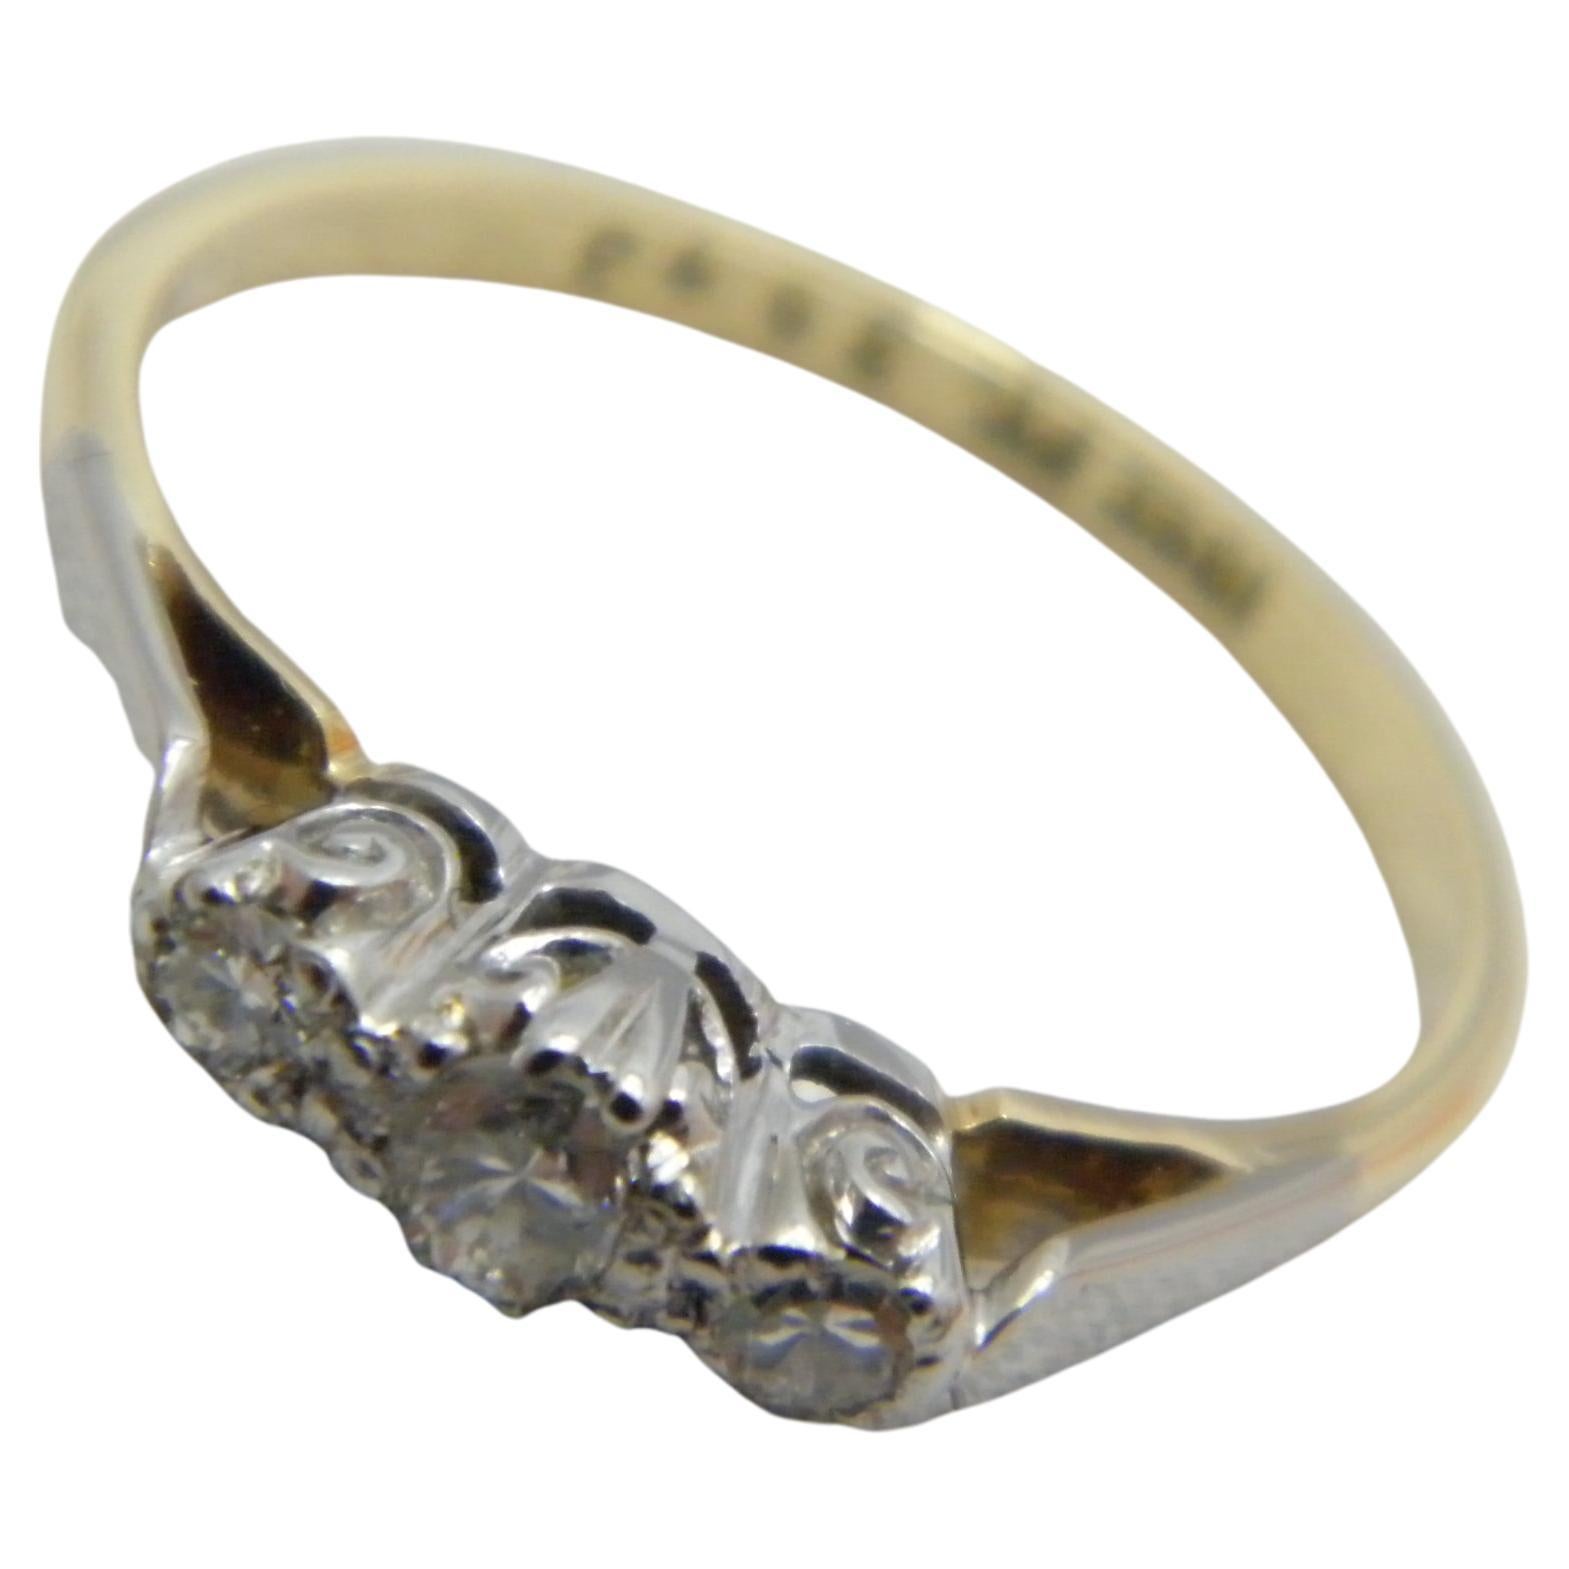 Antique 18ct Gold Platinum Diamond Trilogy Engagement Ring Size L 6 750 950 For Sale